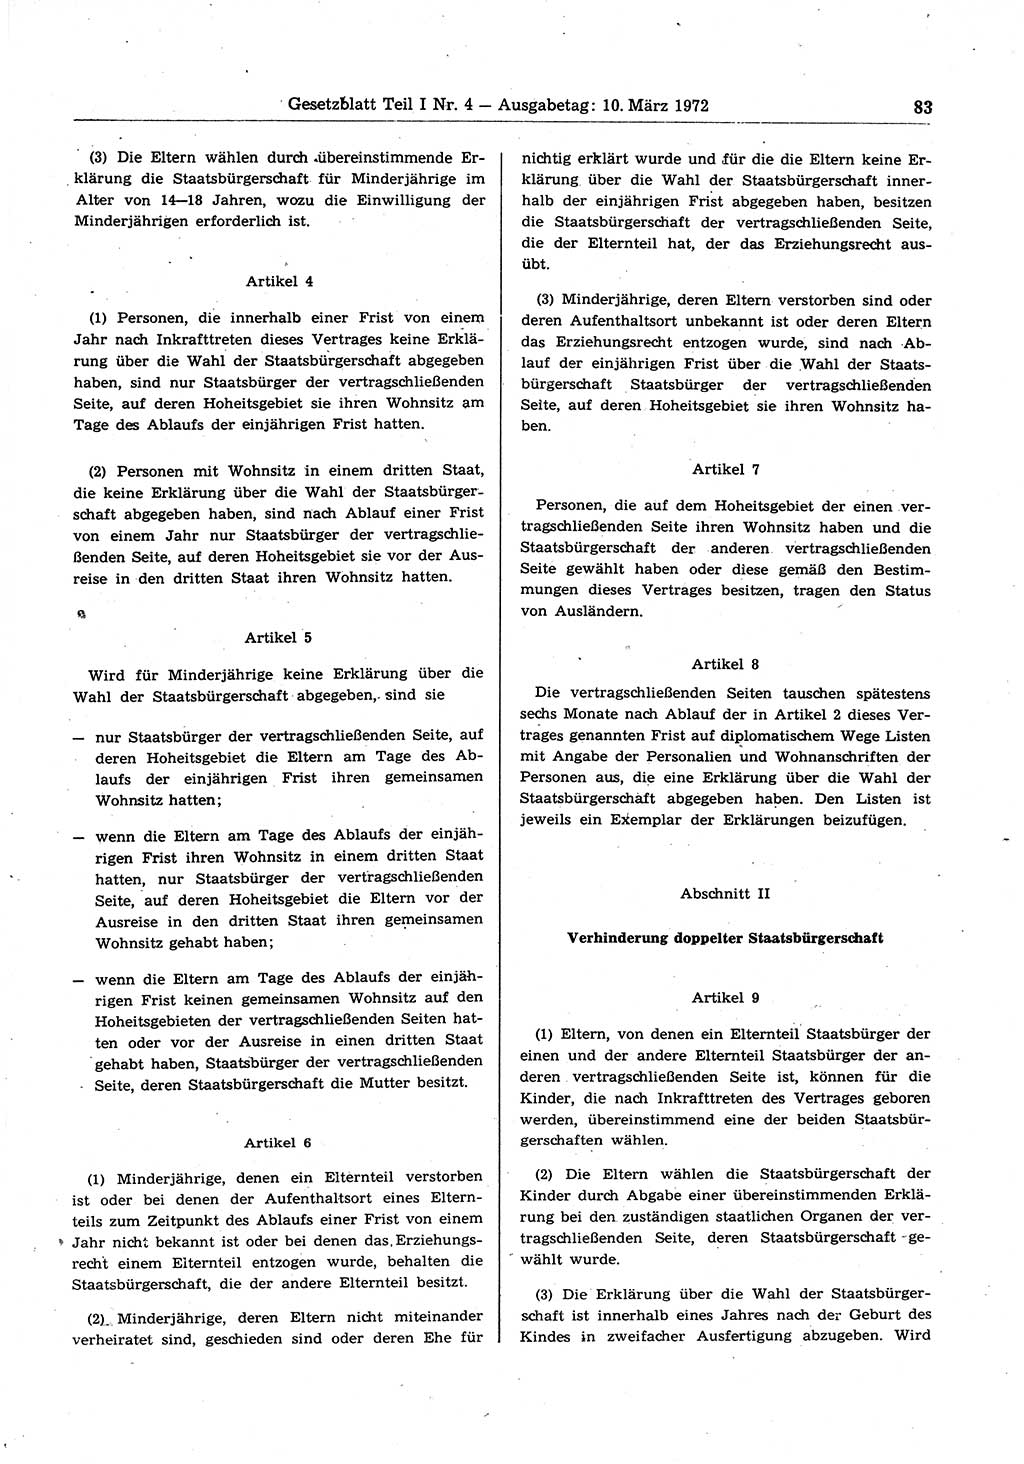 Gesetzblatt (GBl.) der Deutschen Demokratischen Republik (DDR) Teil Ⅰ 1972, Seite 83 (GBl. DDR Ⅰ 1972, S. 83)